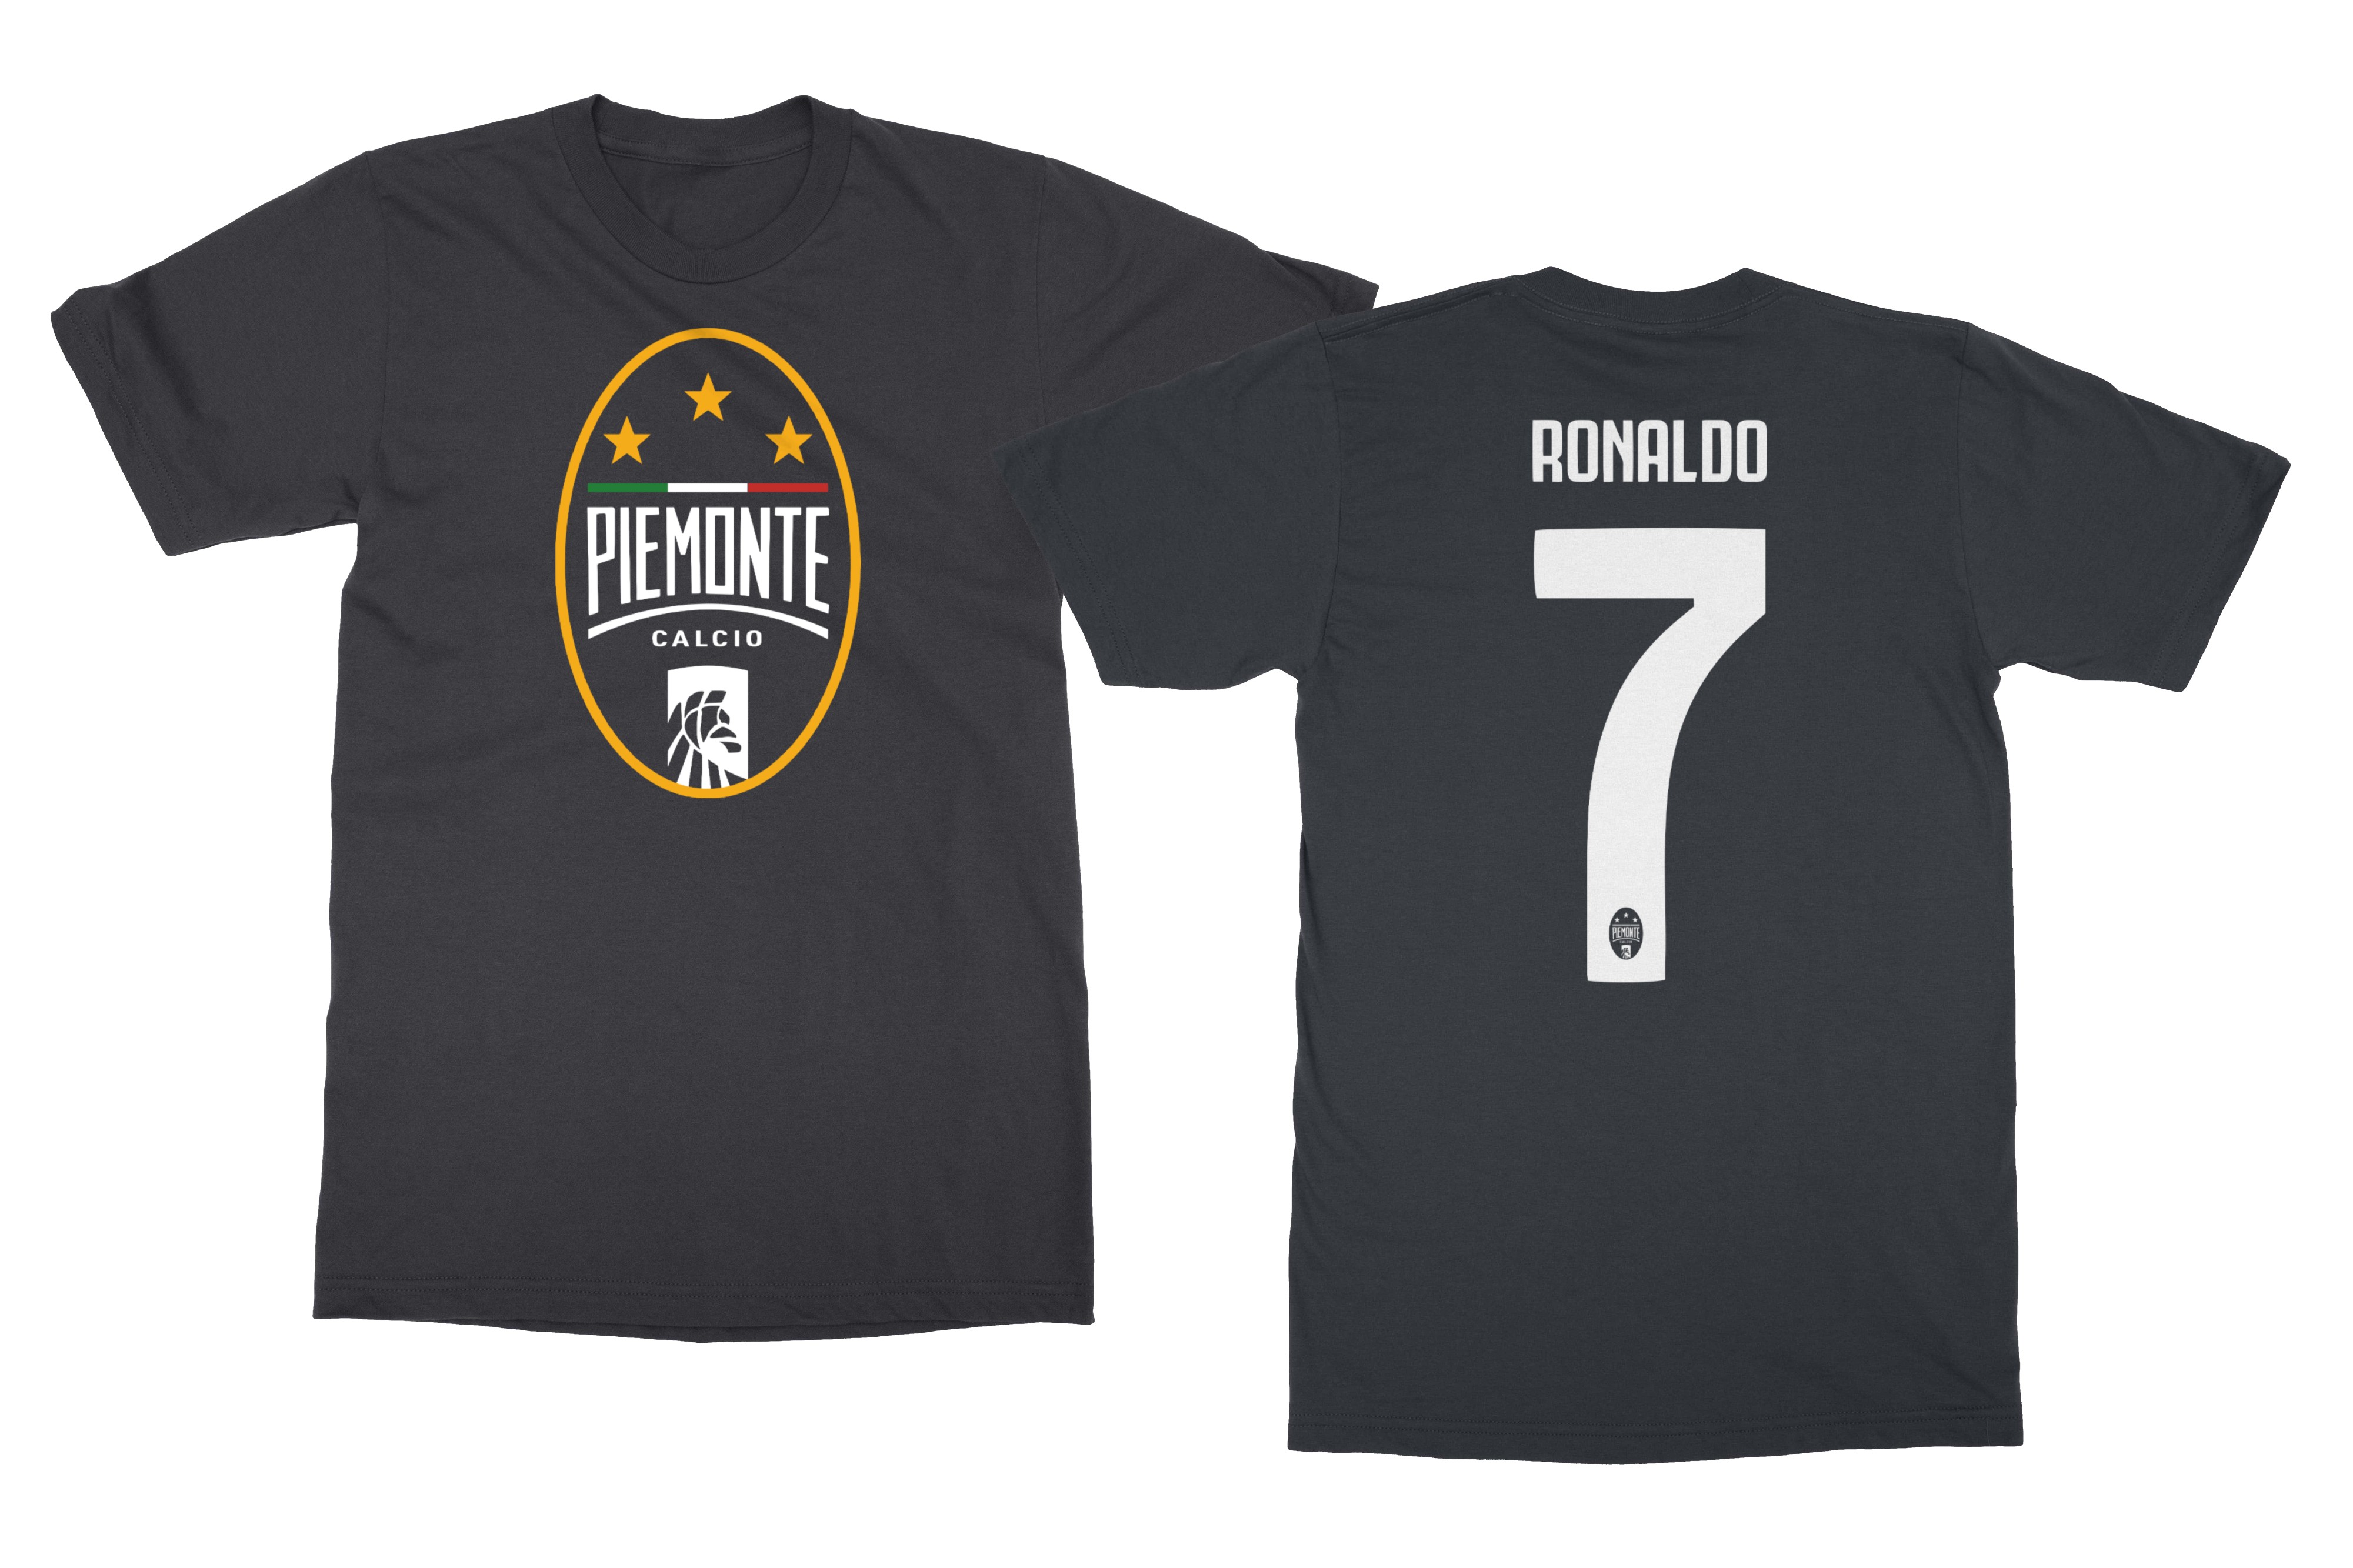 Details About Piemonte Calcio Juventus Fifa 20 Ronaldo 7 Funny Mens T Shirt